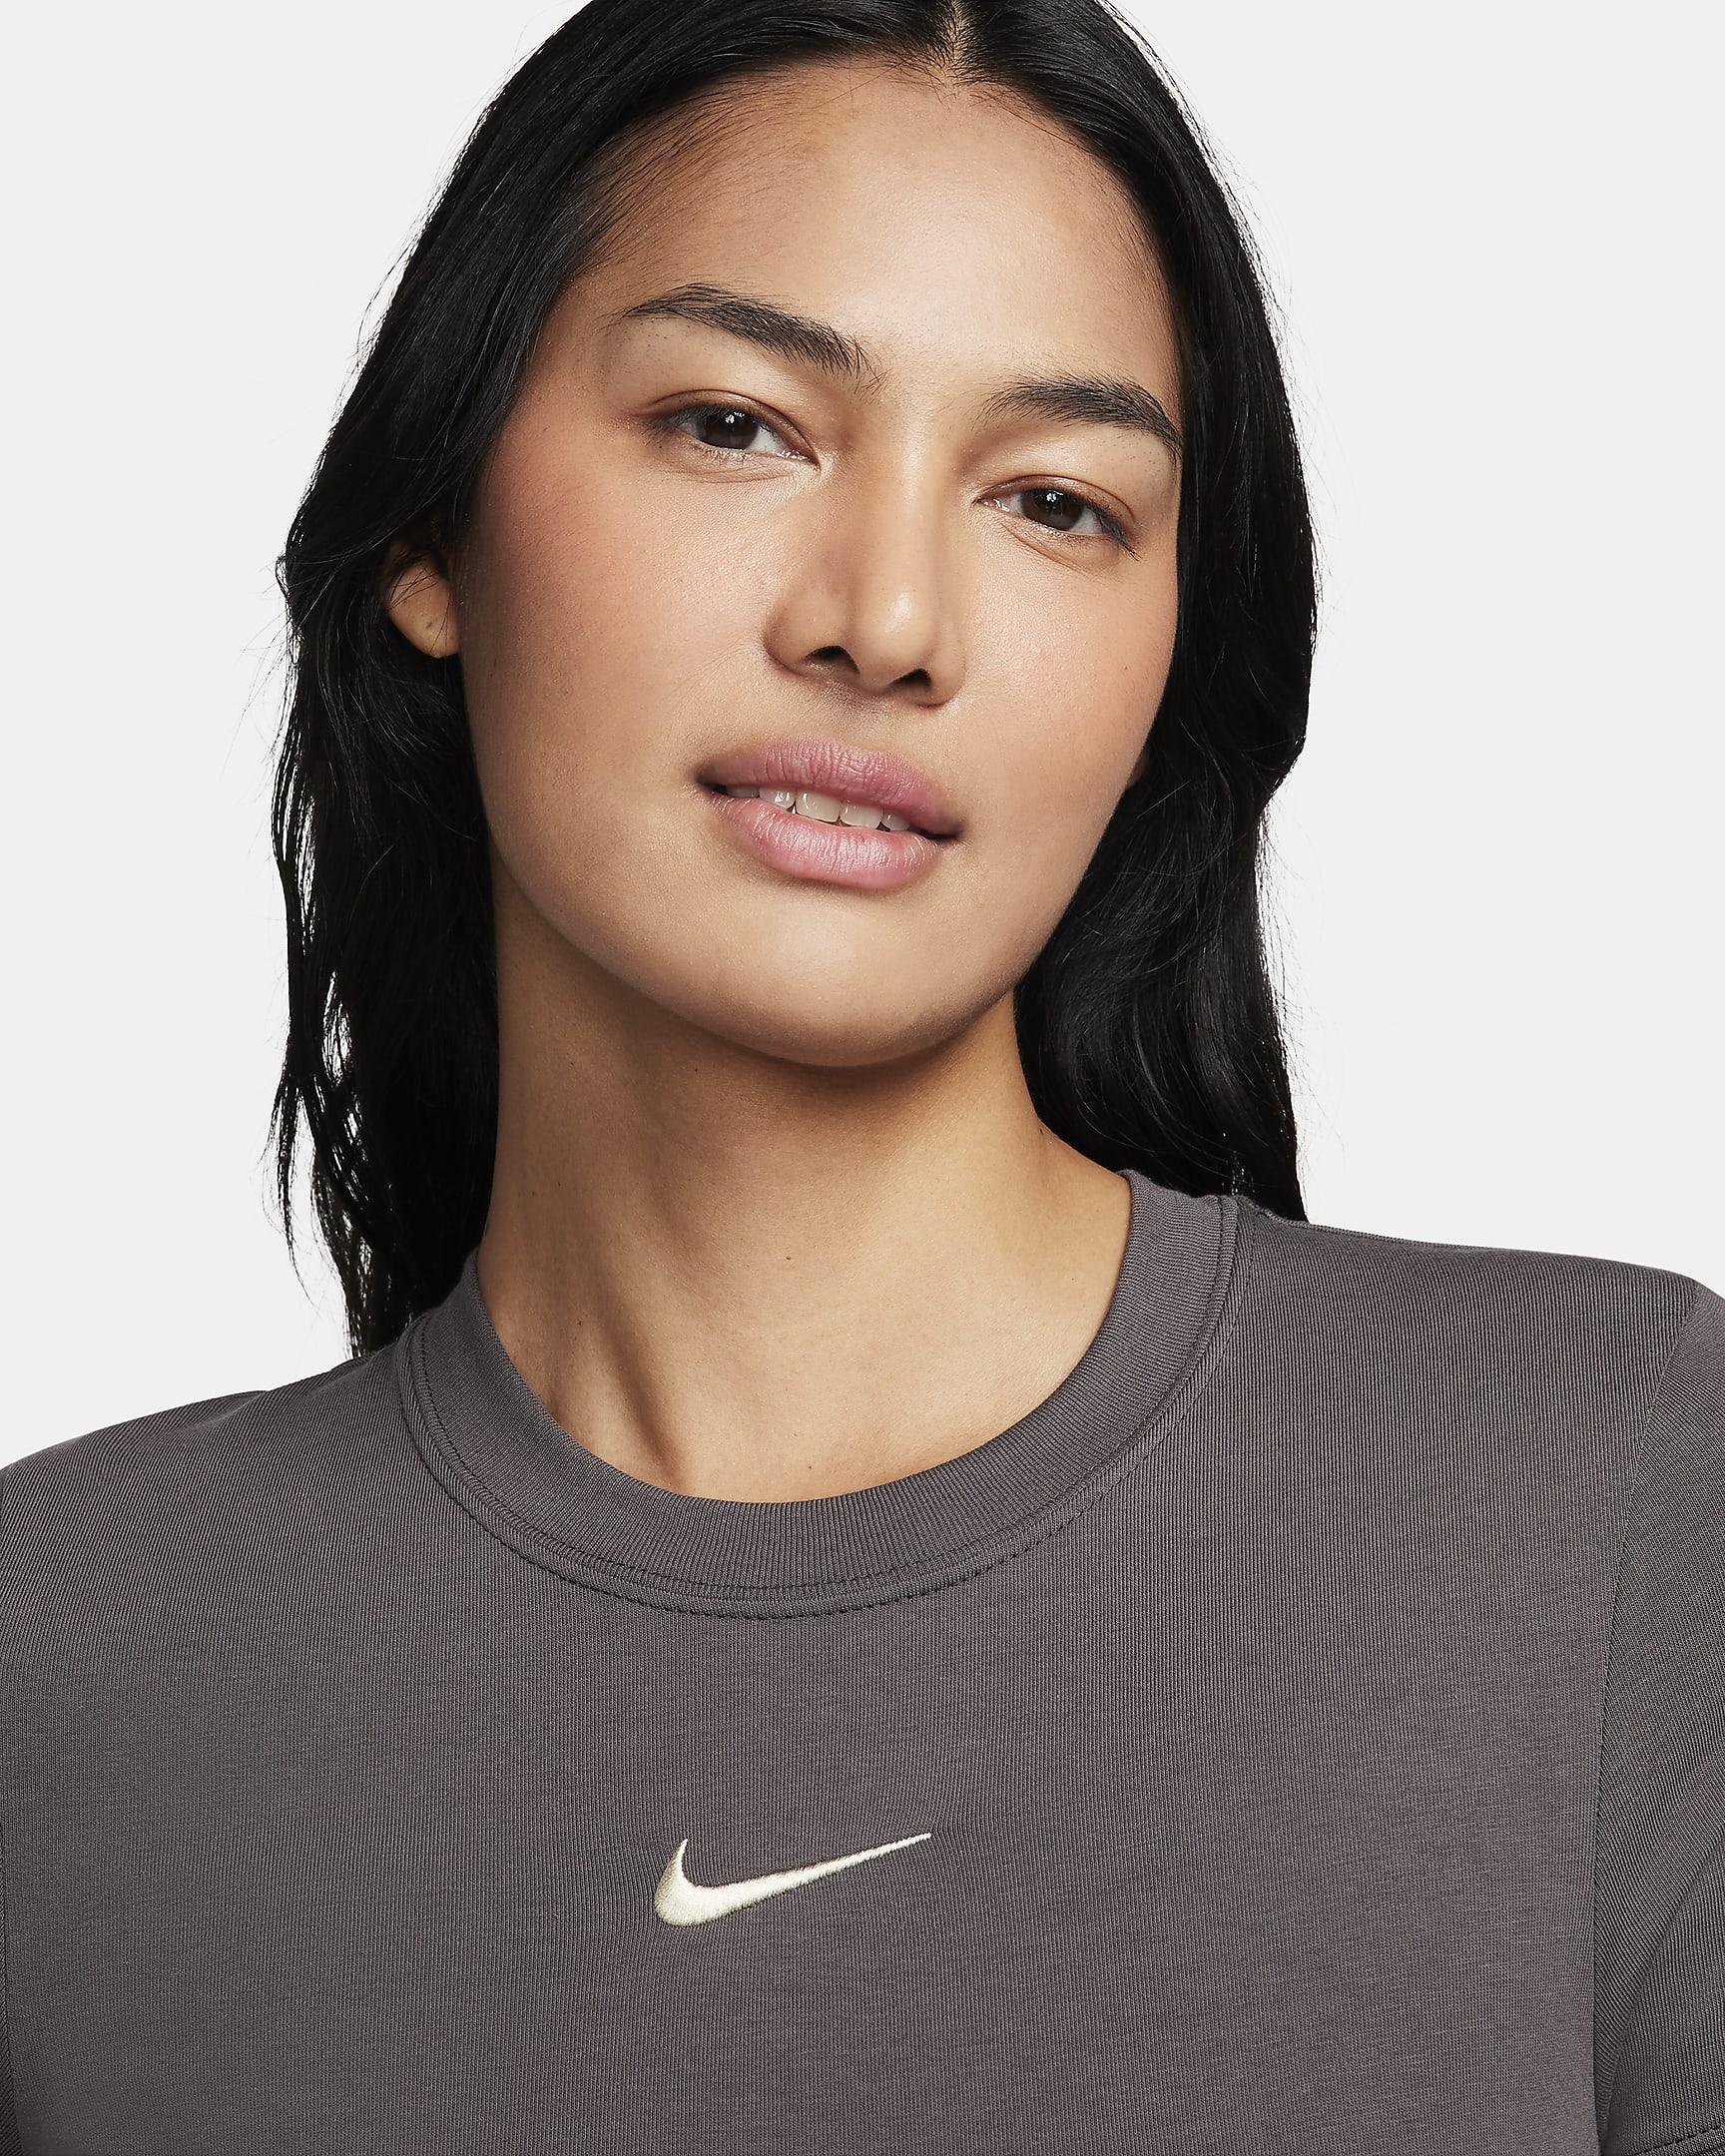 Nike Sportswear Women's Short-Sleeve Bodysuit - Medium Ash